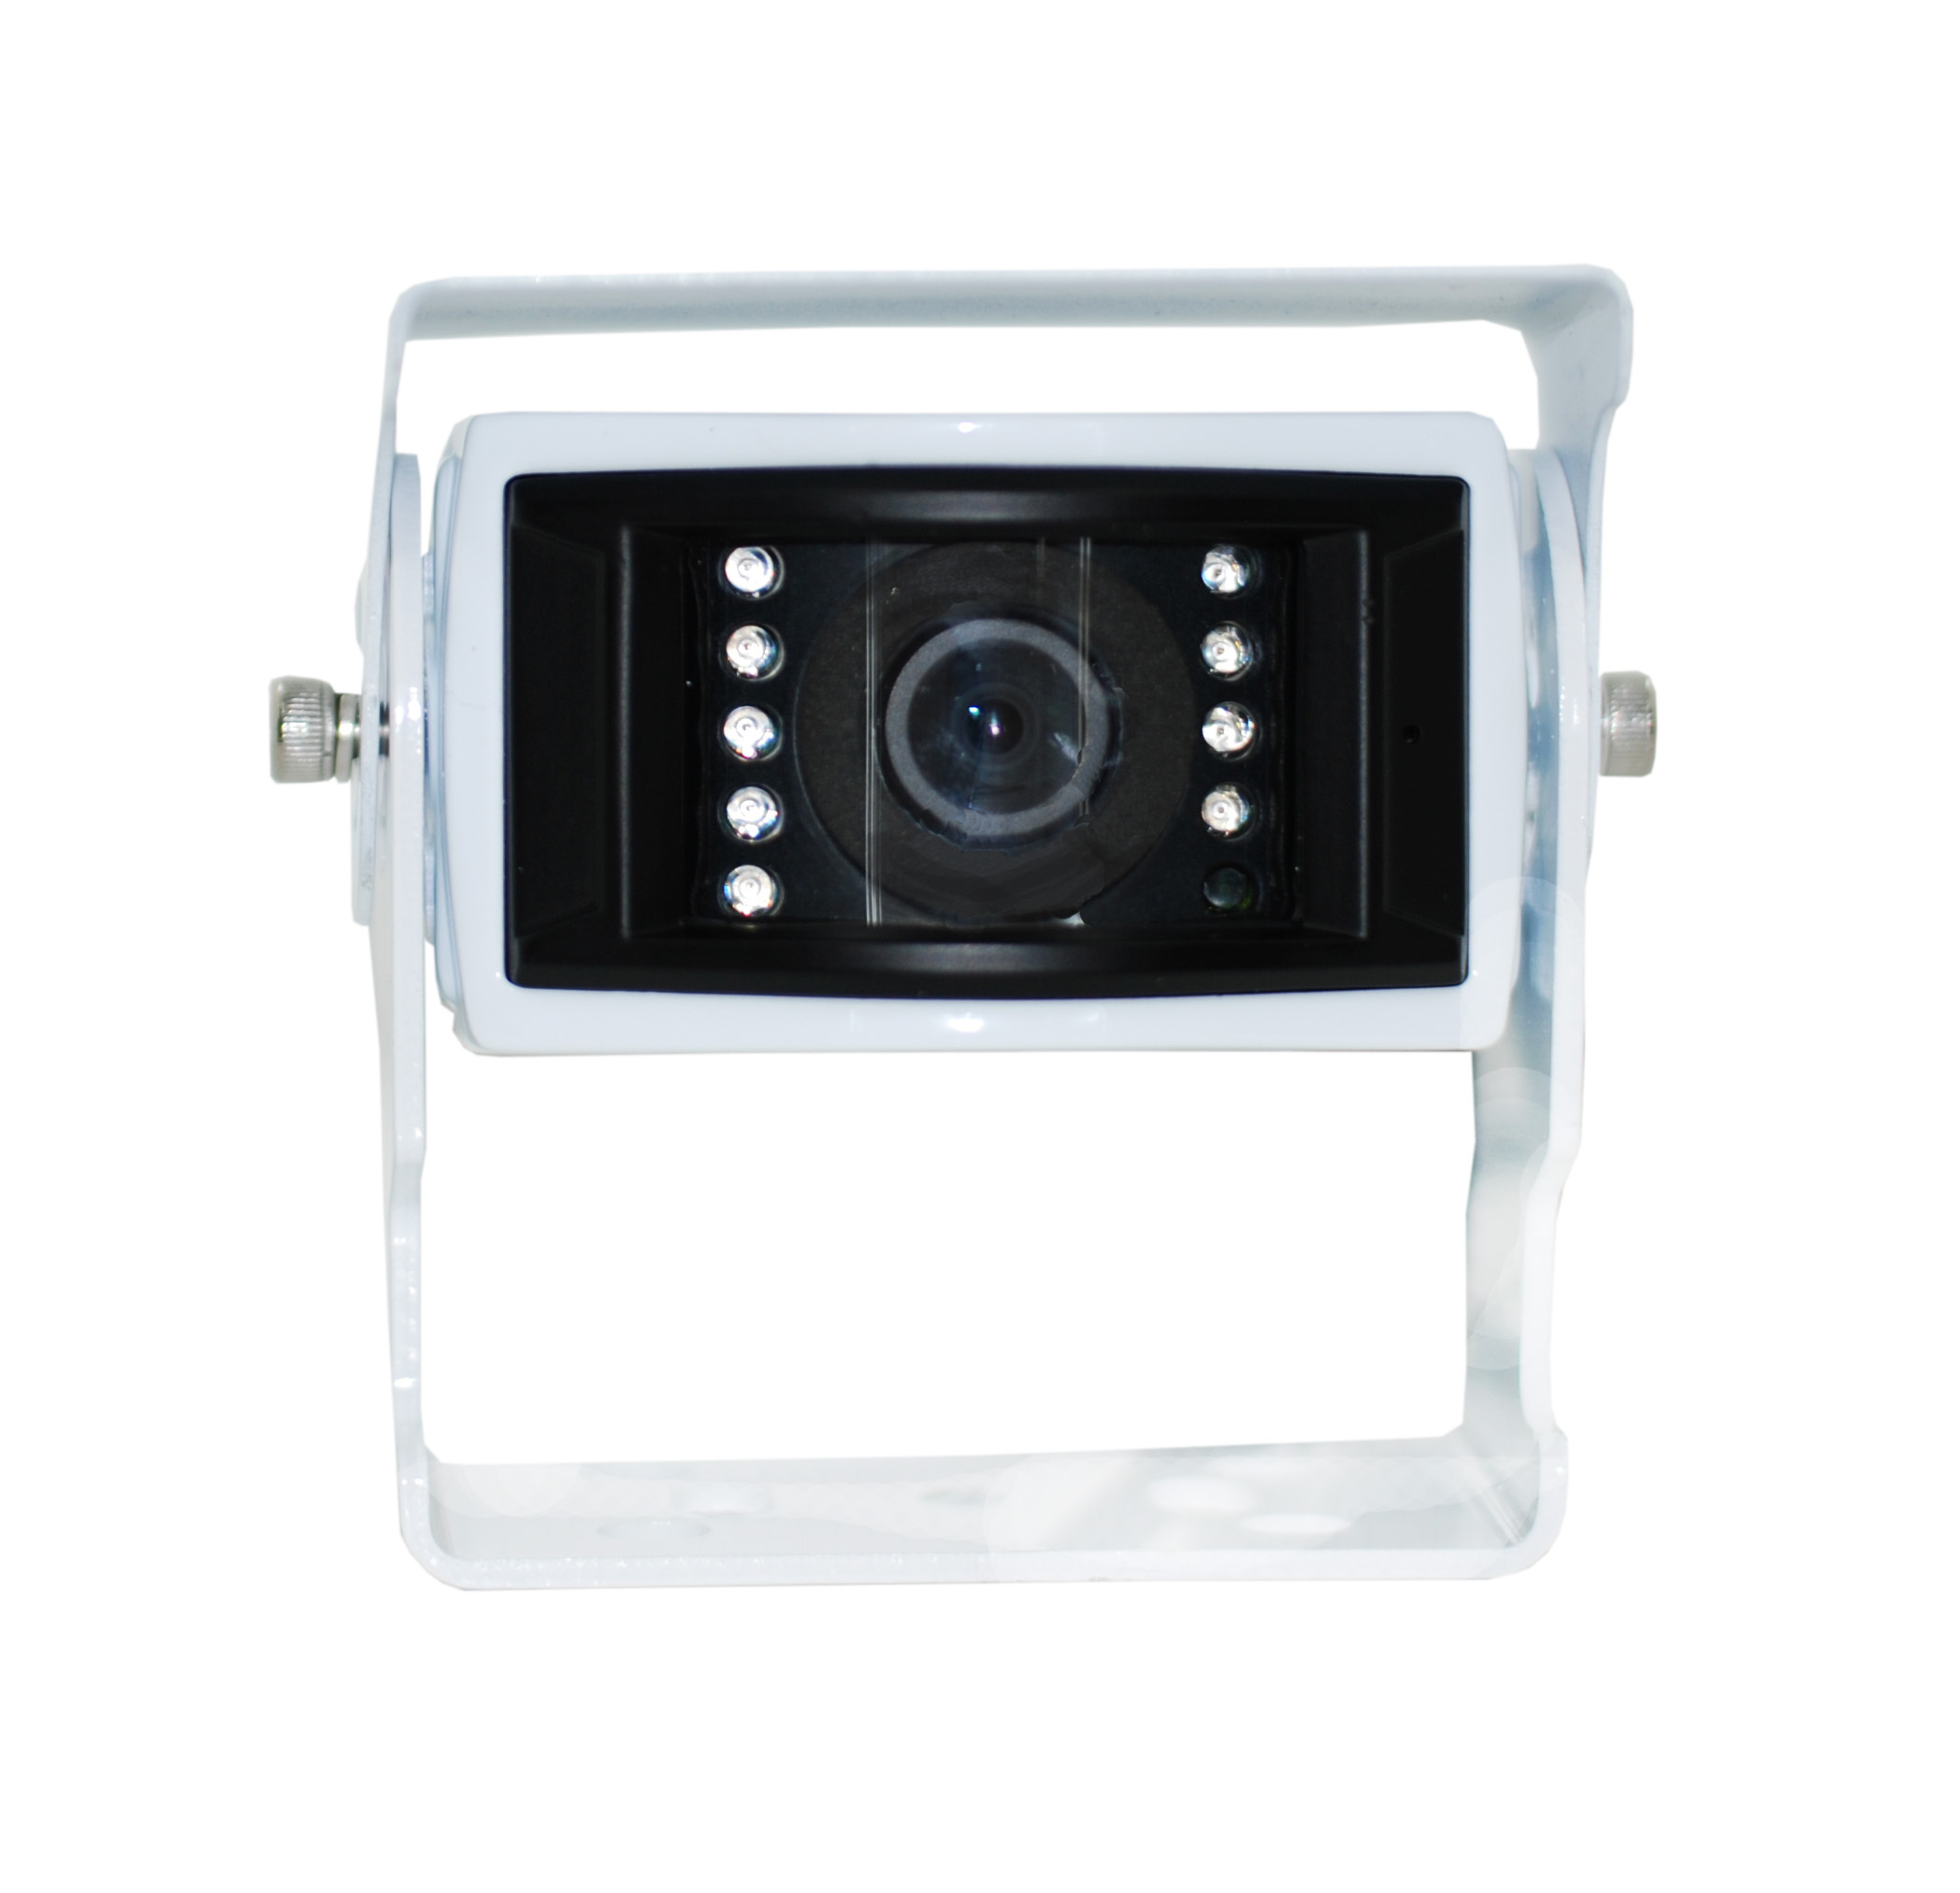 HD rear vision camera